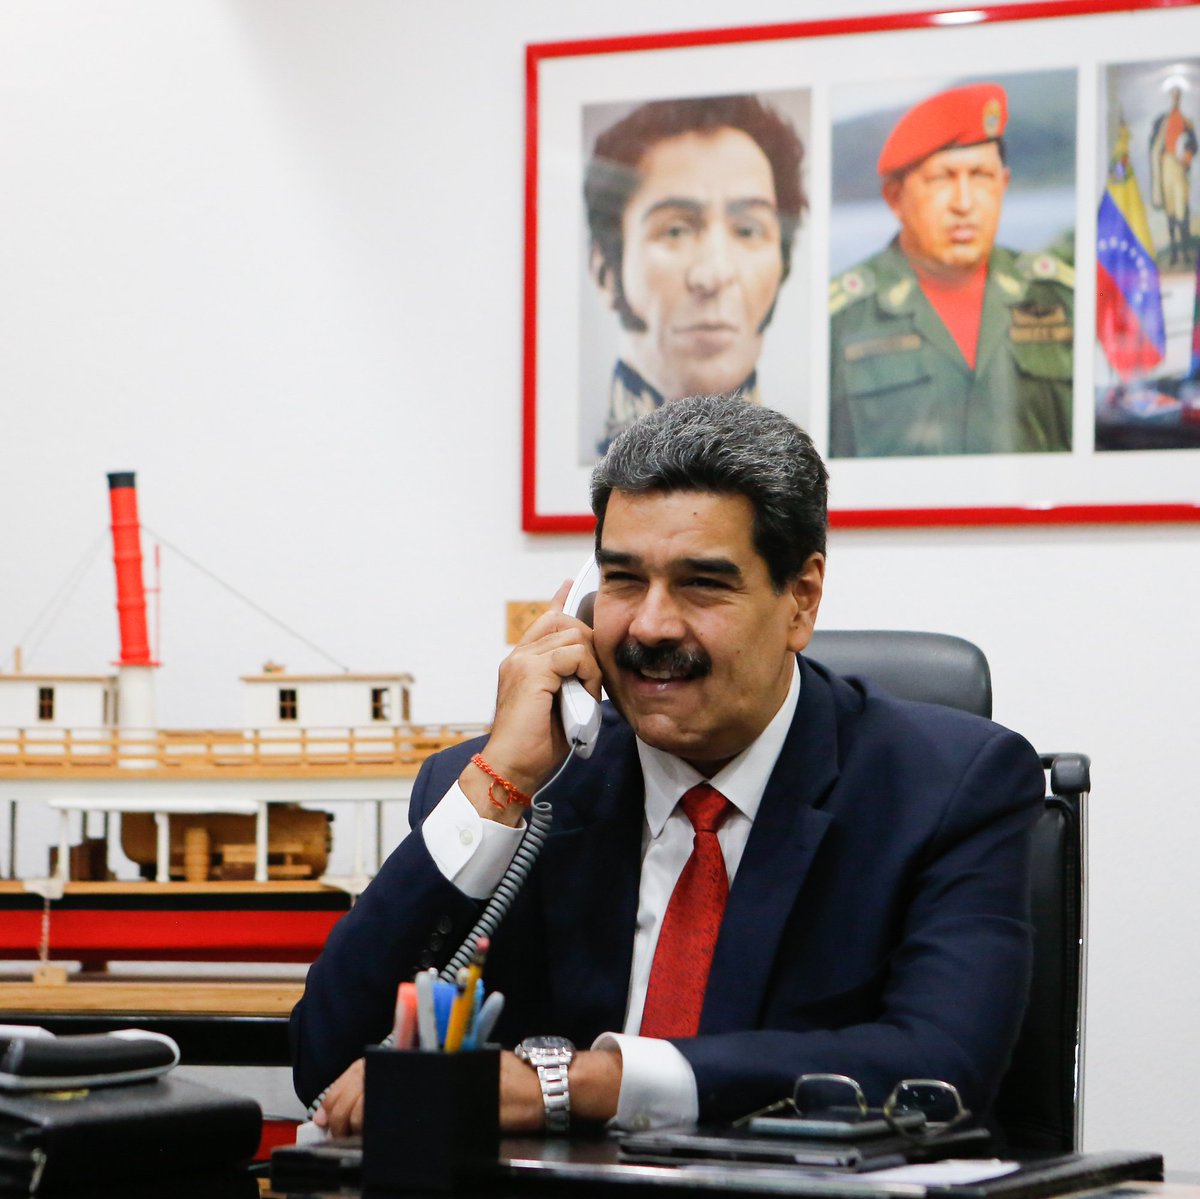 El pasado domingo #30Abr, sostuve un contacto telefónico con el nuevo Presidente electo de Paraguay, Santiago Peña, a quien le expresé mis felicitaciones en nombre del pueblo venezolano y la disposición de trabajar por el bien de nuestros países, a través del respeto y la unión.